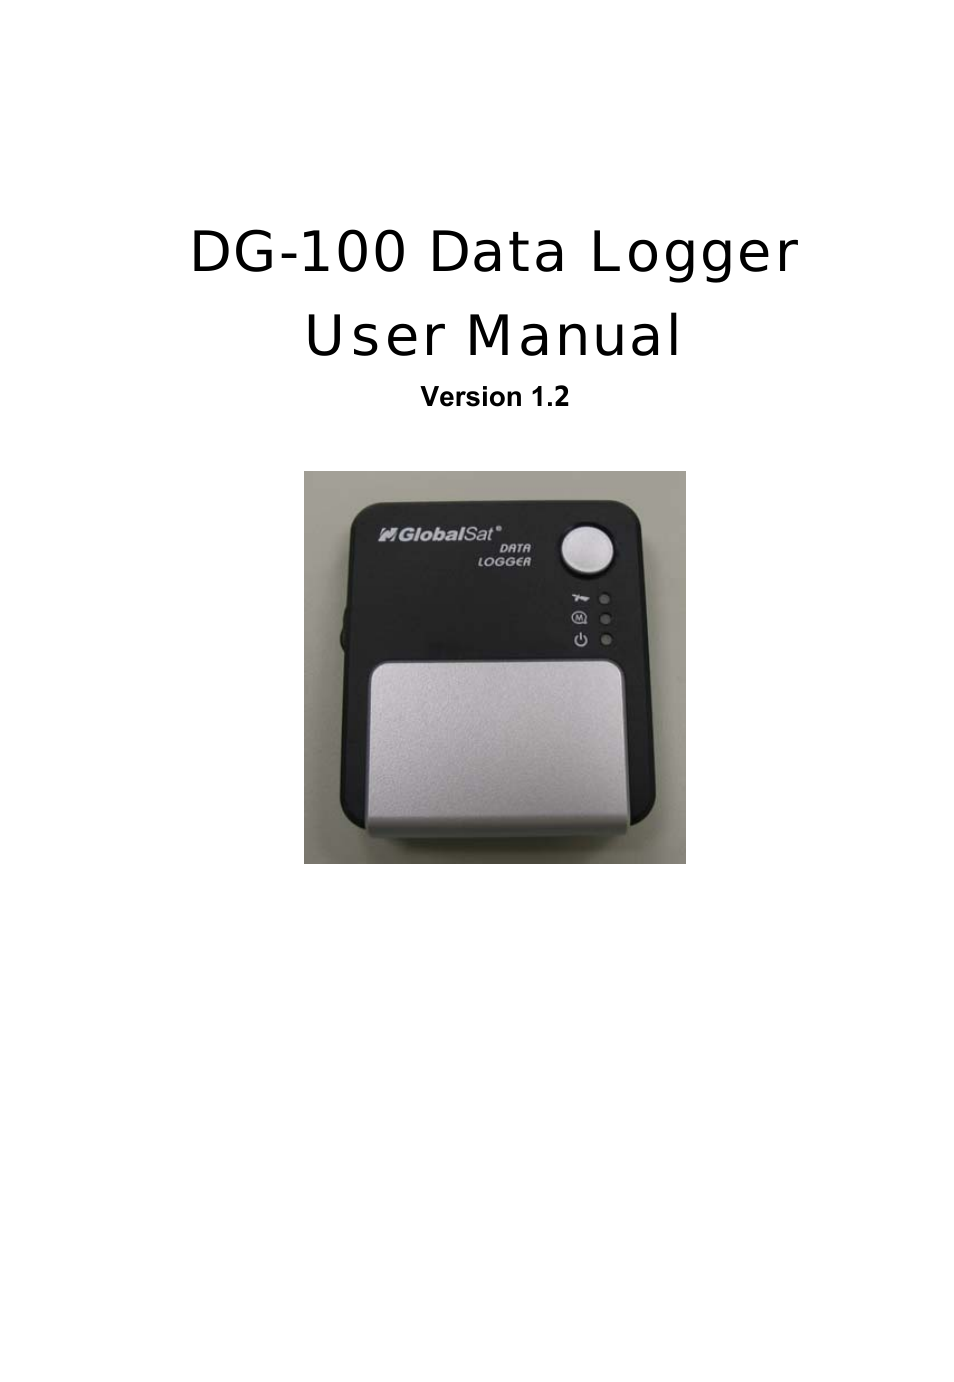 DG-100 User Guide